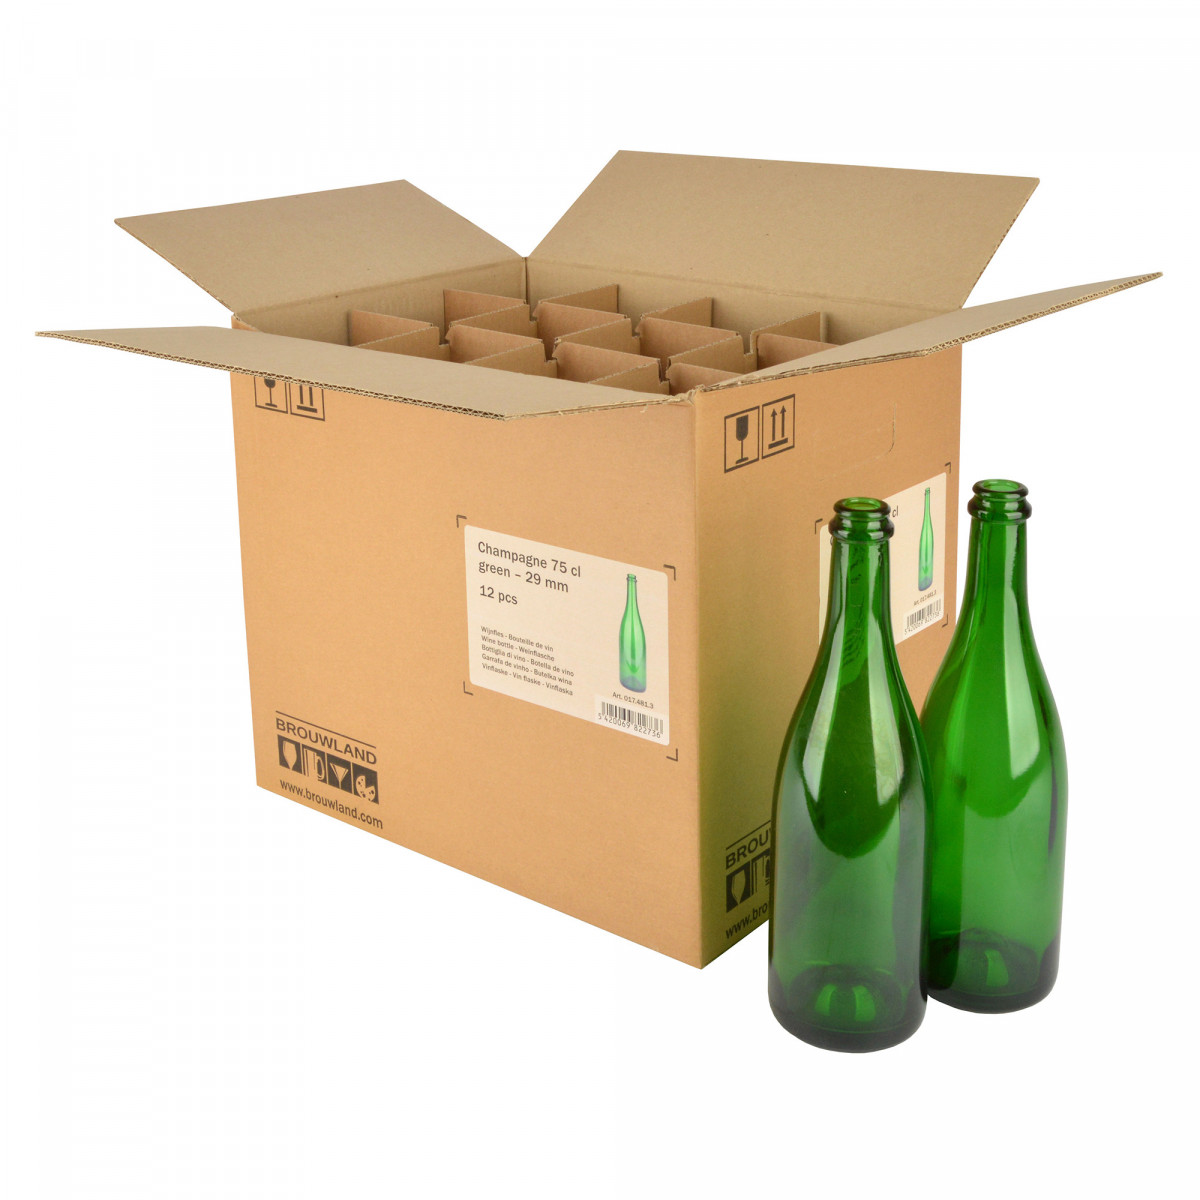 Wijnfles champagne 75 cl, 775 g, groen, 29 mm, doos 12 st.